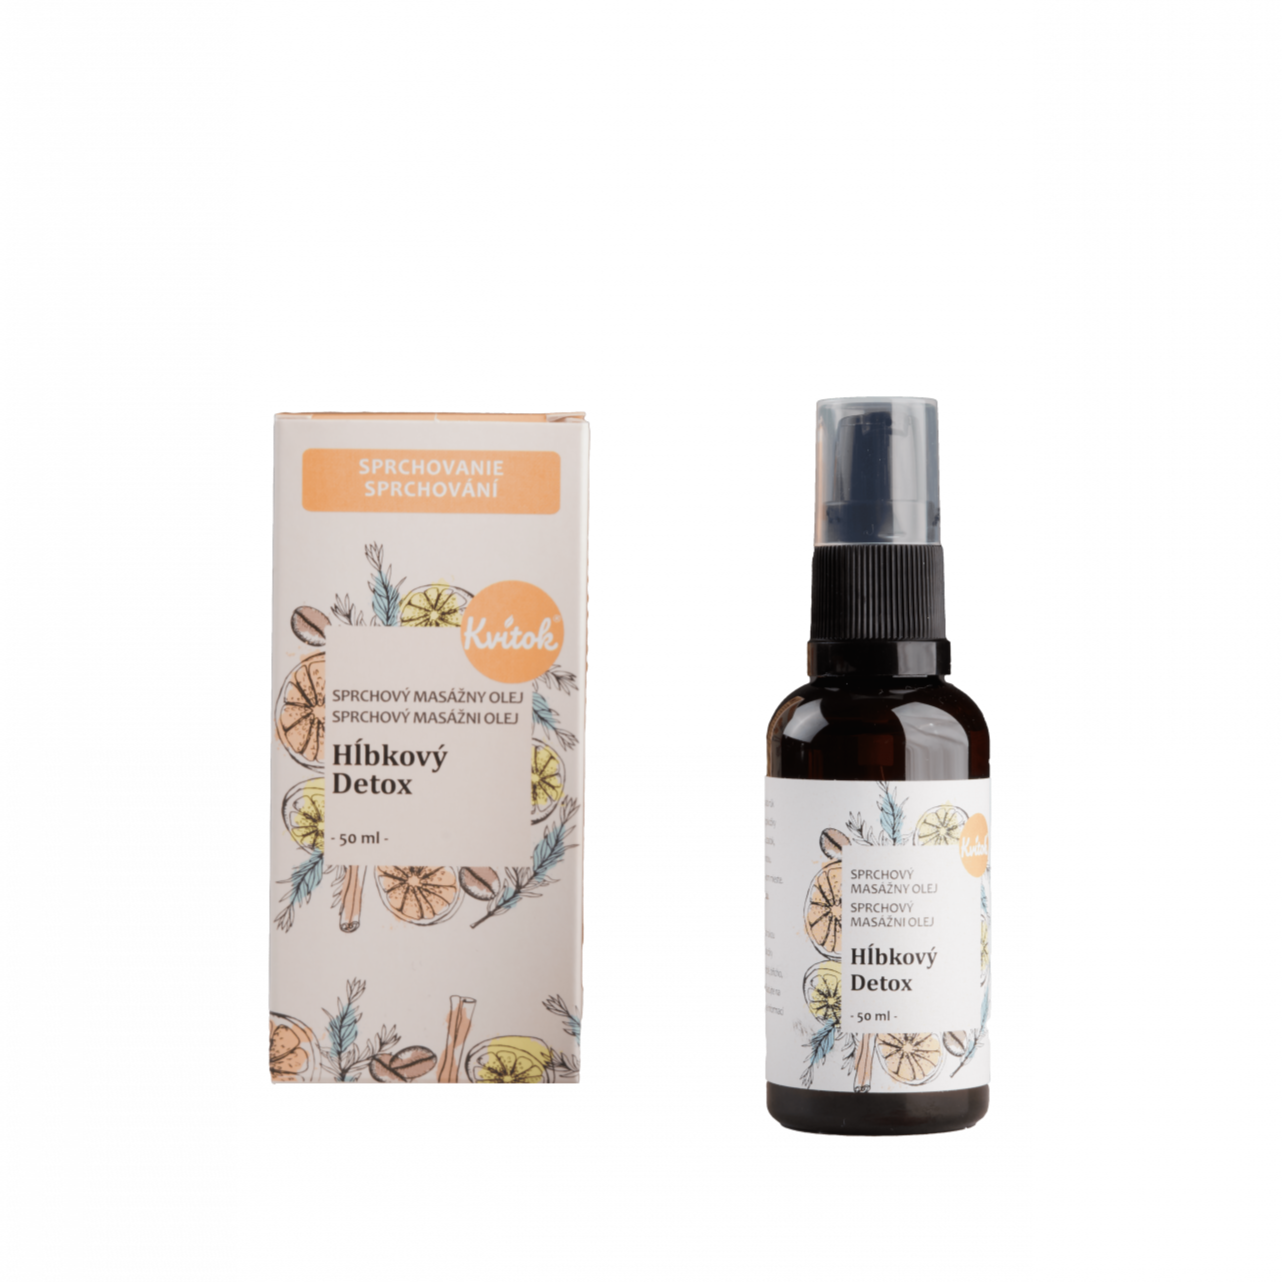 Kvitok Sprchový masážní olej proti celulitidě Hloubkový detox (50 ml) - II. jakost Kvitok